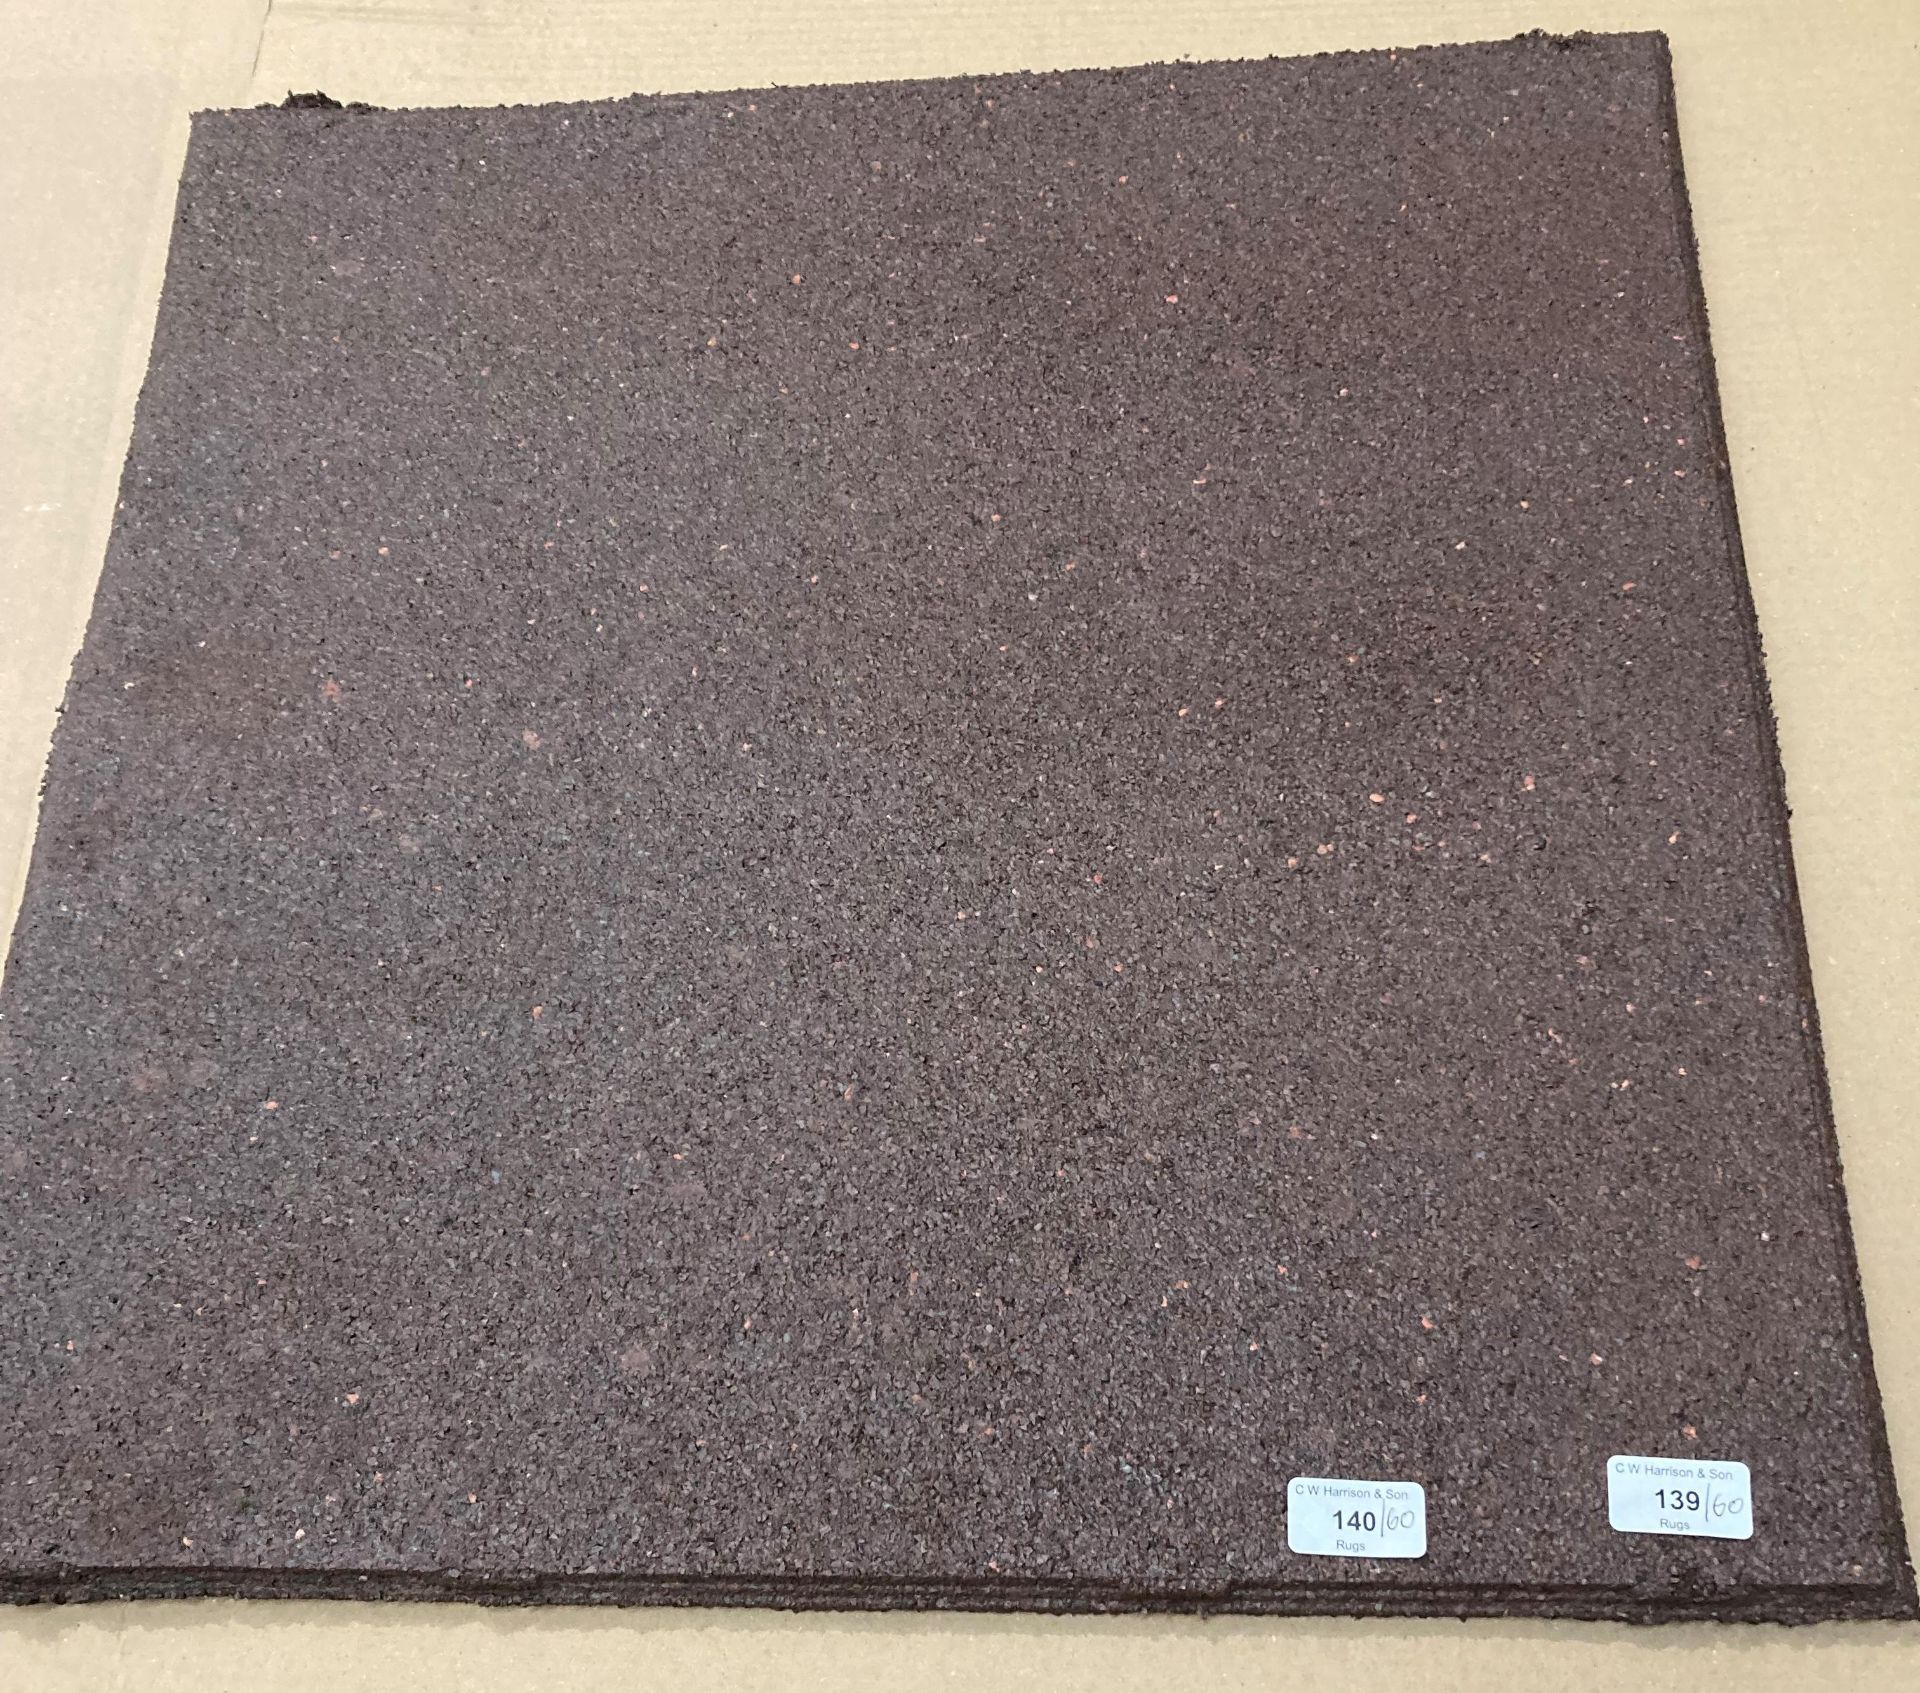 60 x brown coloured heavy duty rubber composite tiles 60cm x 60cm (QD) *Please note the final